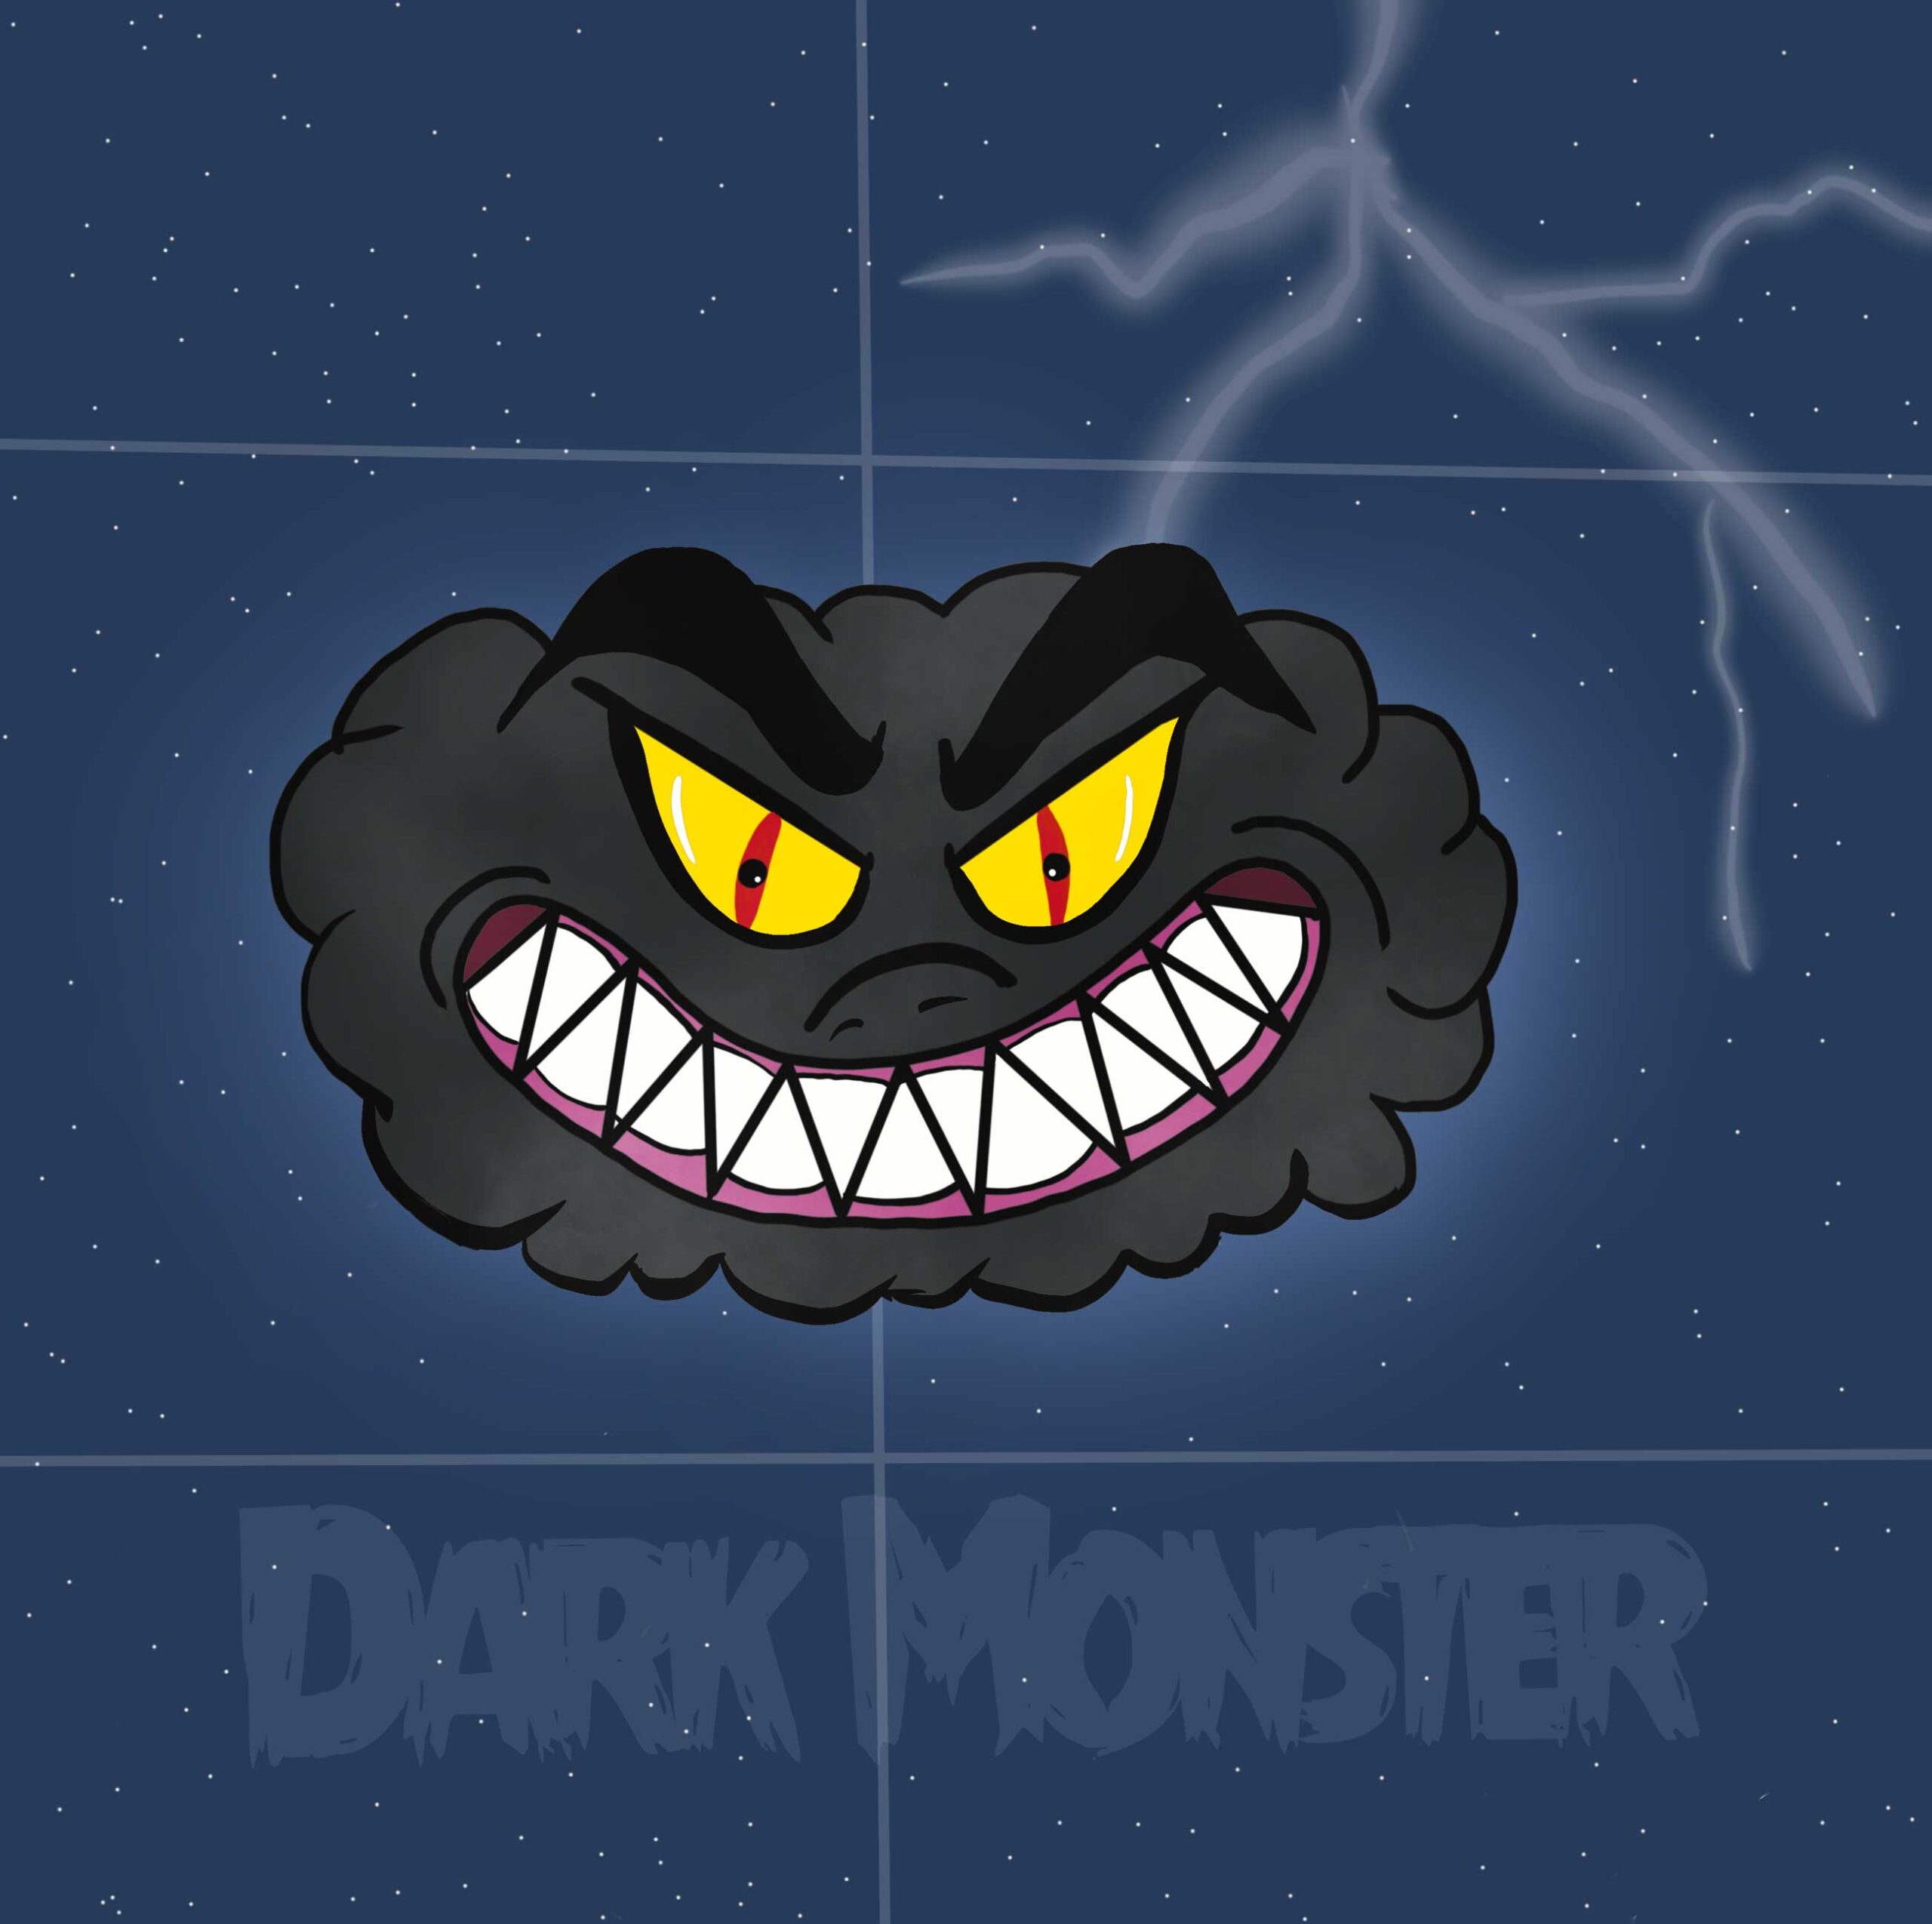 The Dark Monster